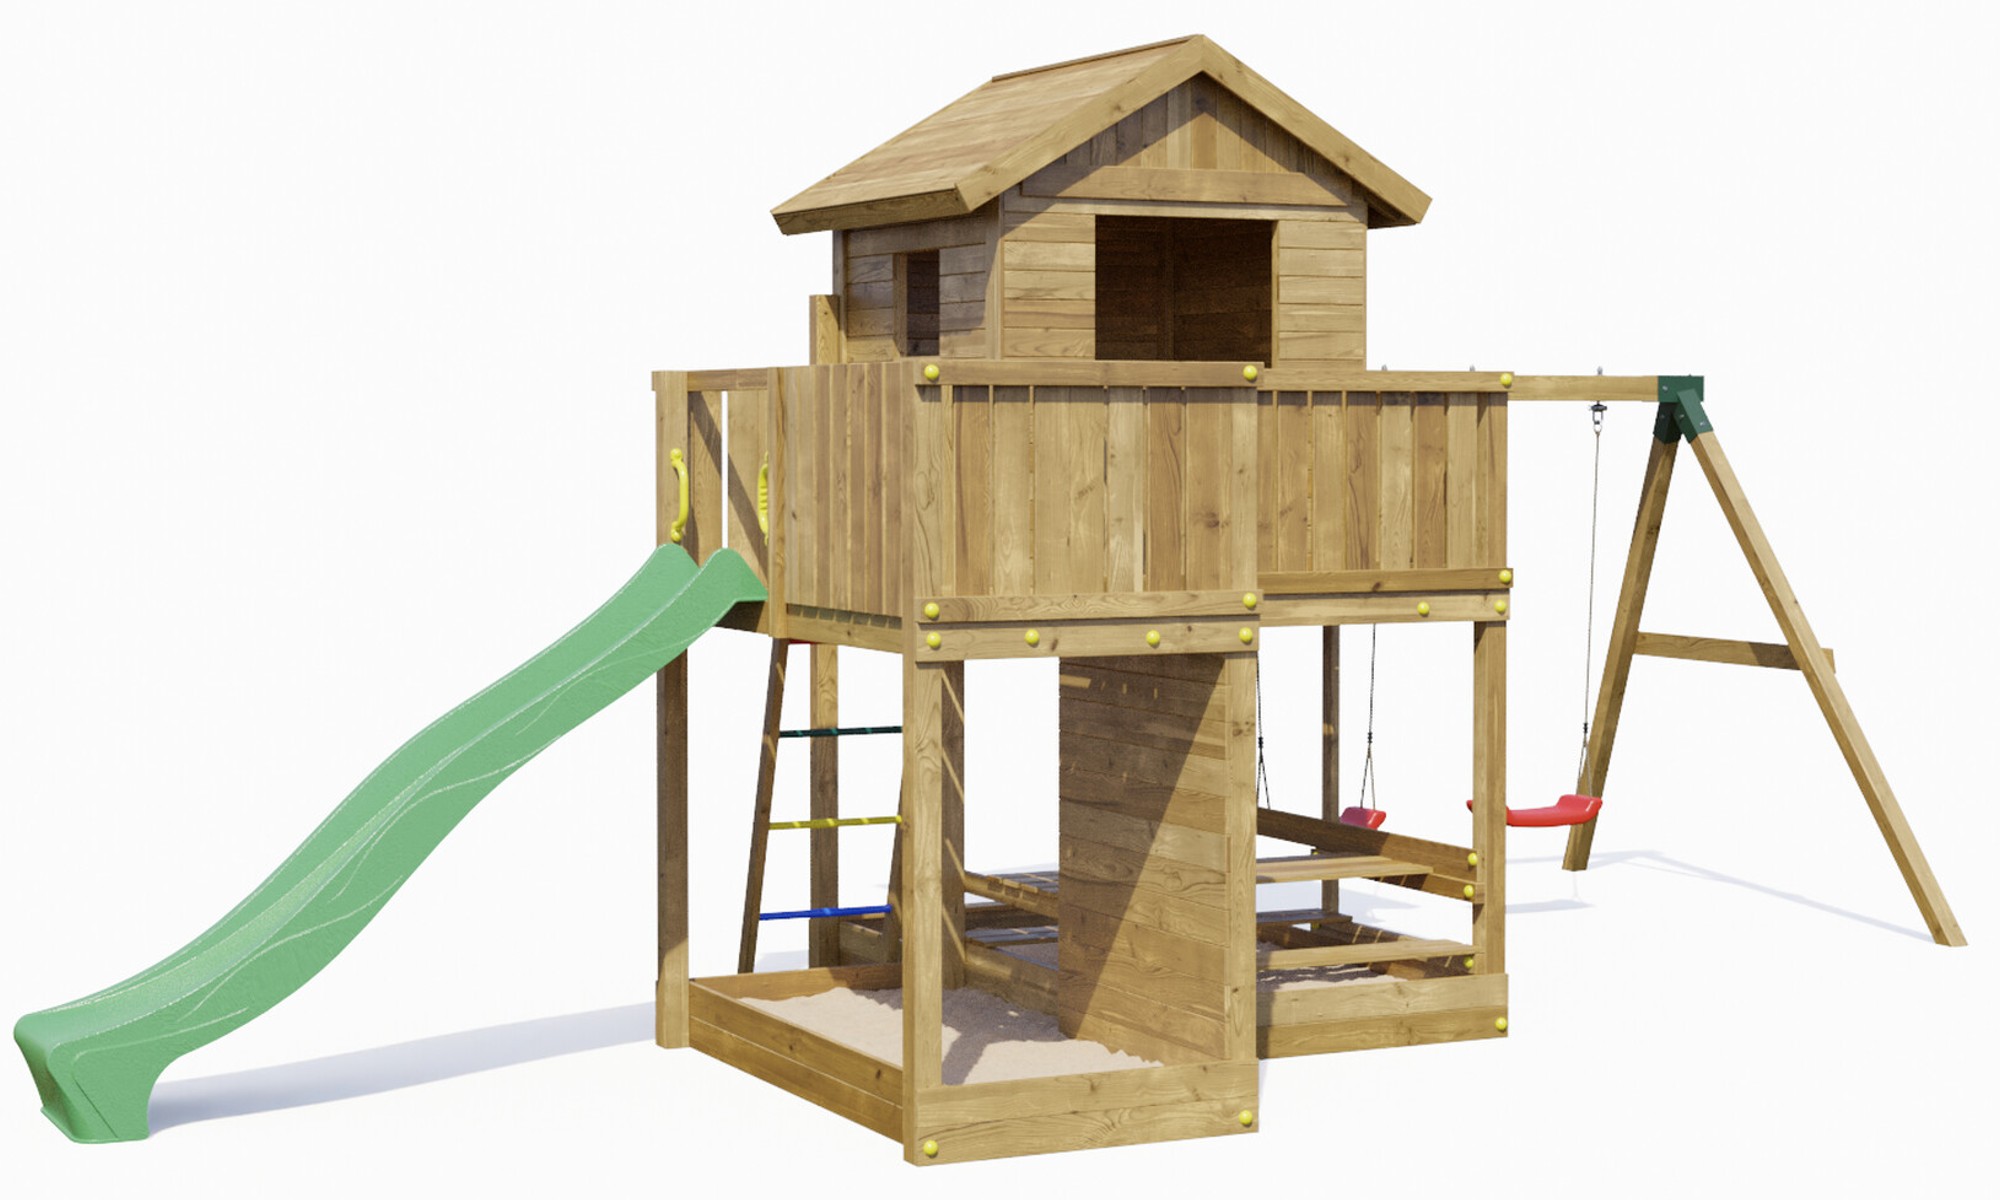 Plac zabaw drewniany ogrodowy Pluto KDI domek, zjedalnia, 2x hutawka, 2x piaskownica, st piknikowy, cianka wspinaczkowa